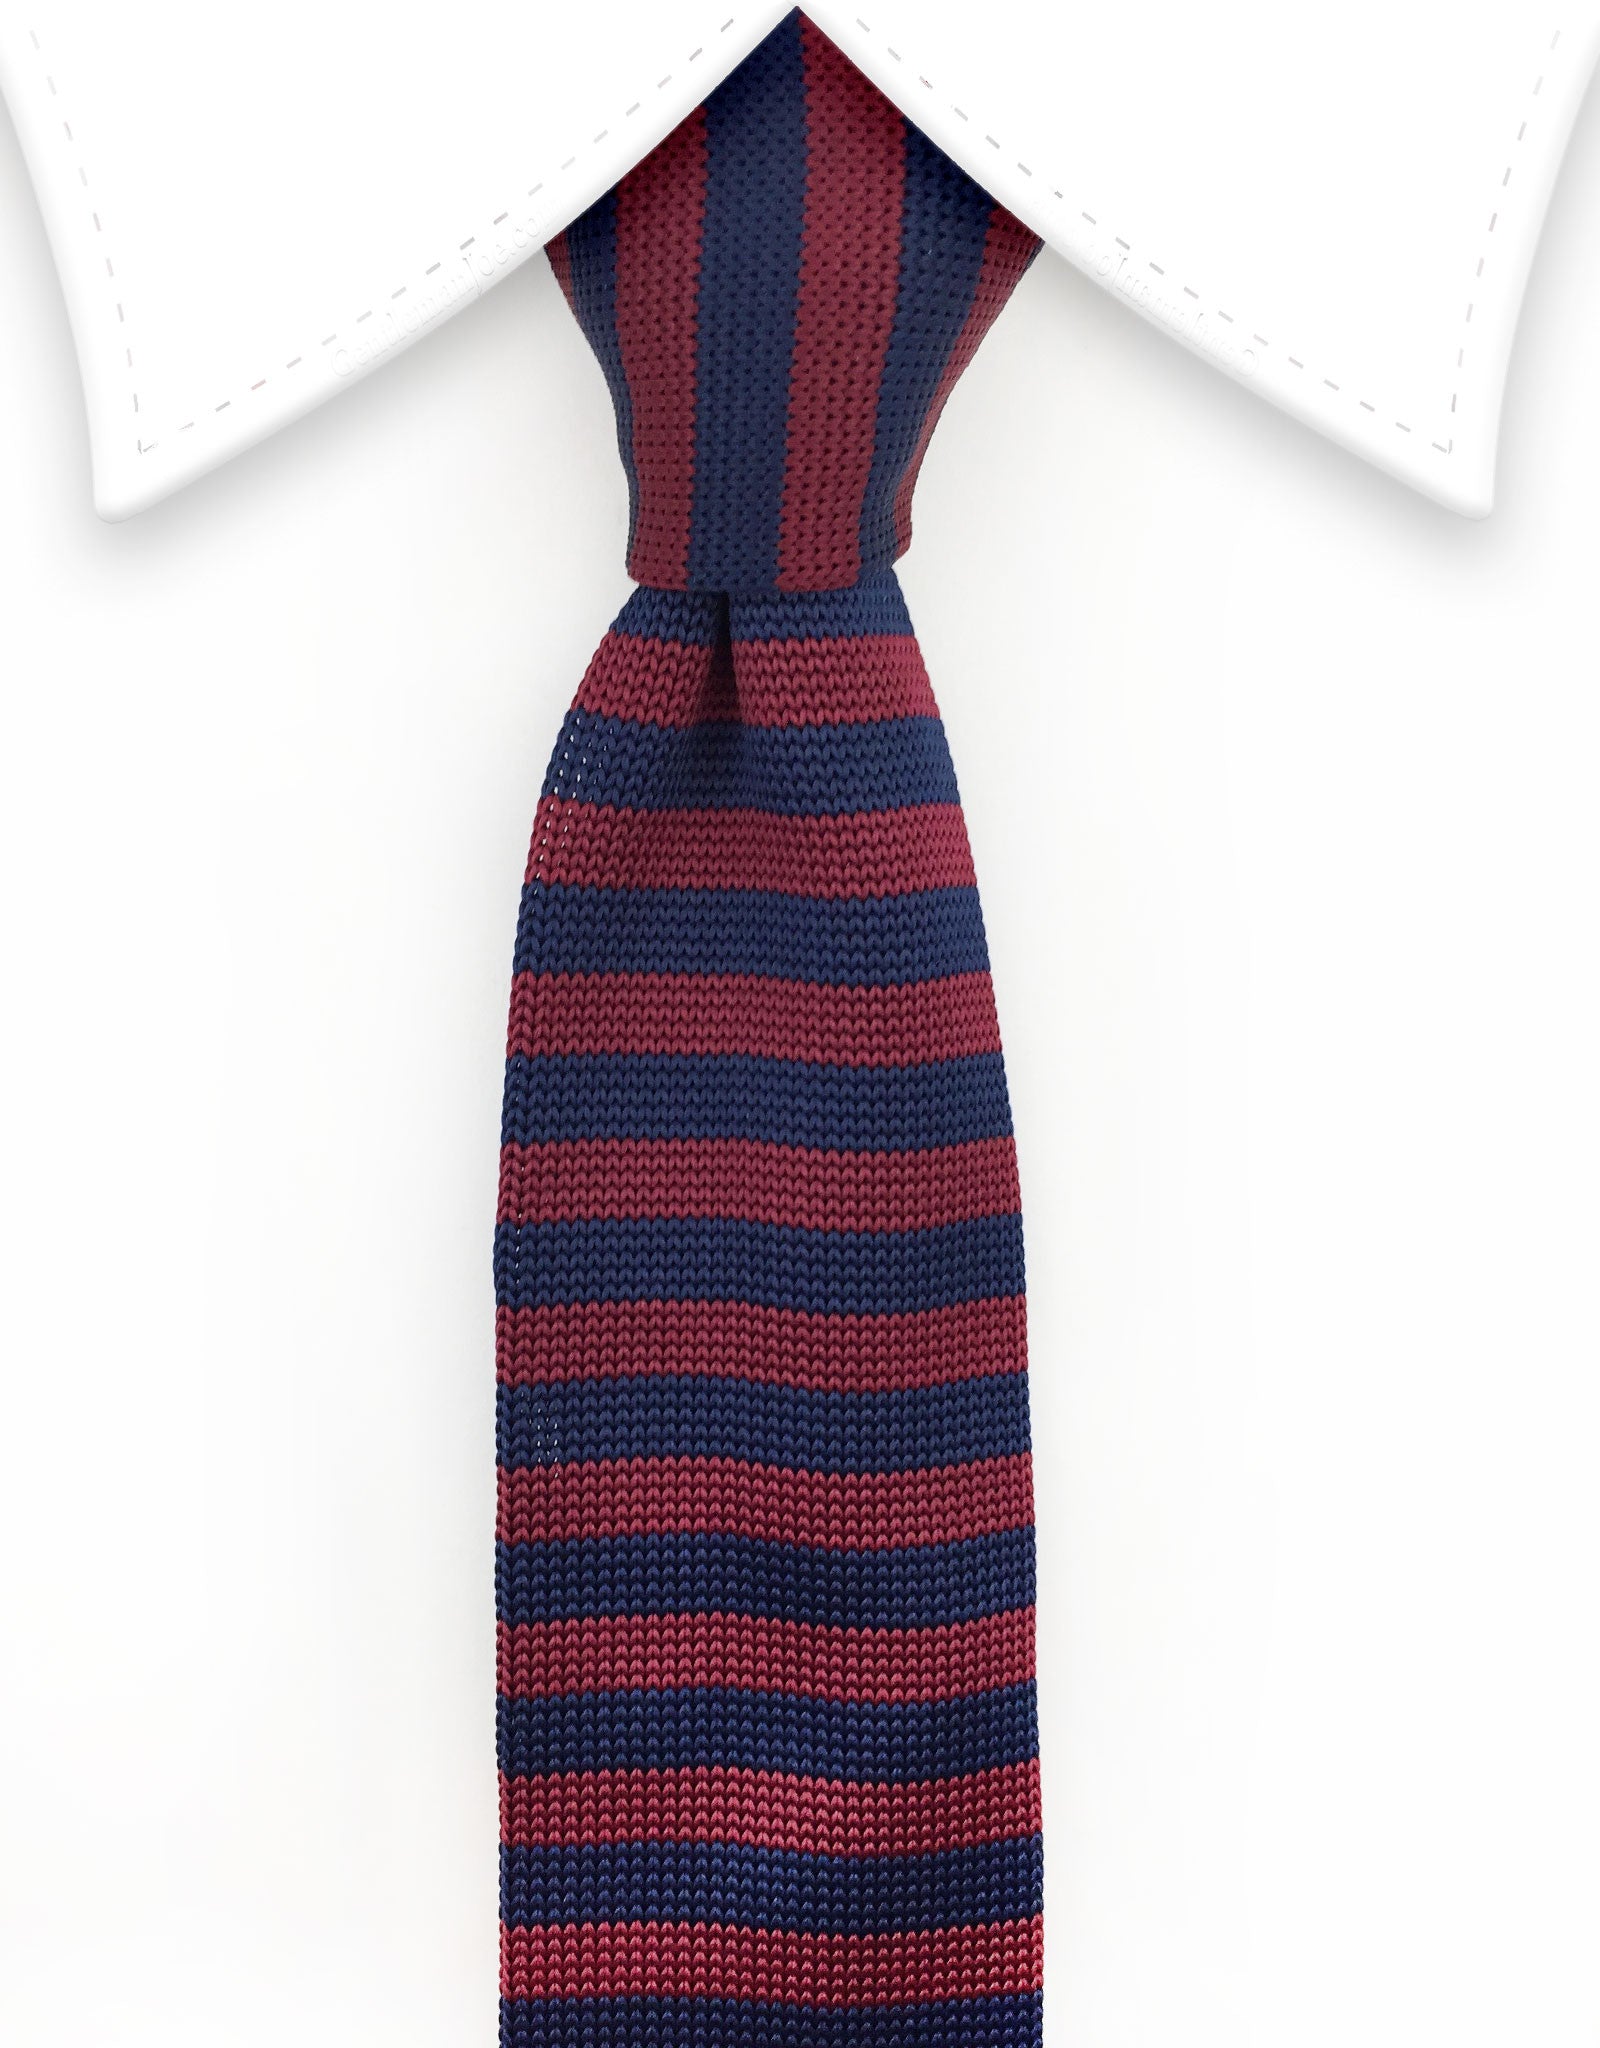 Burgundy Red and Navy Blue Striped Knit Necktie – GentlemanJoe